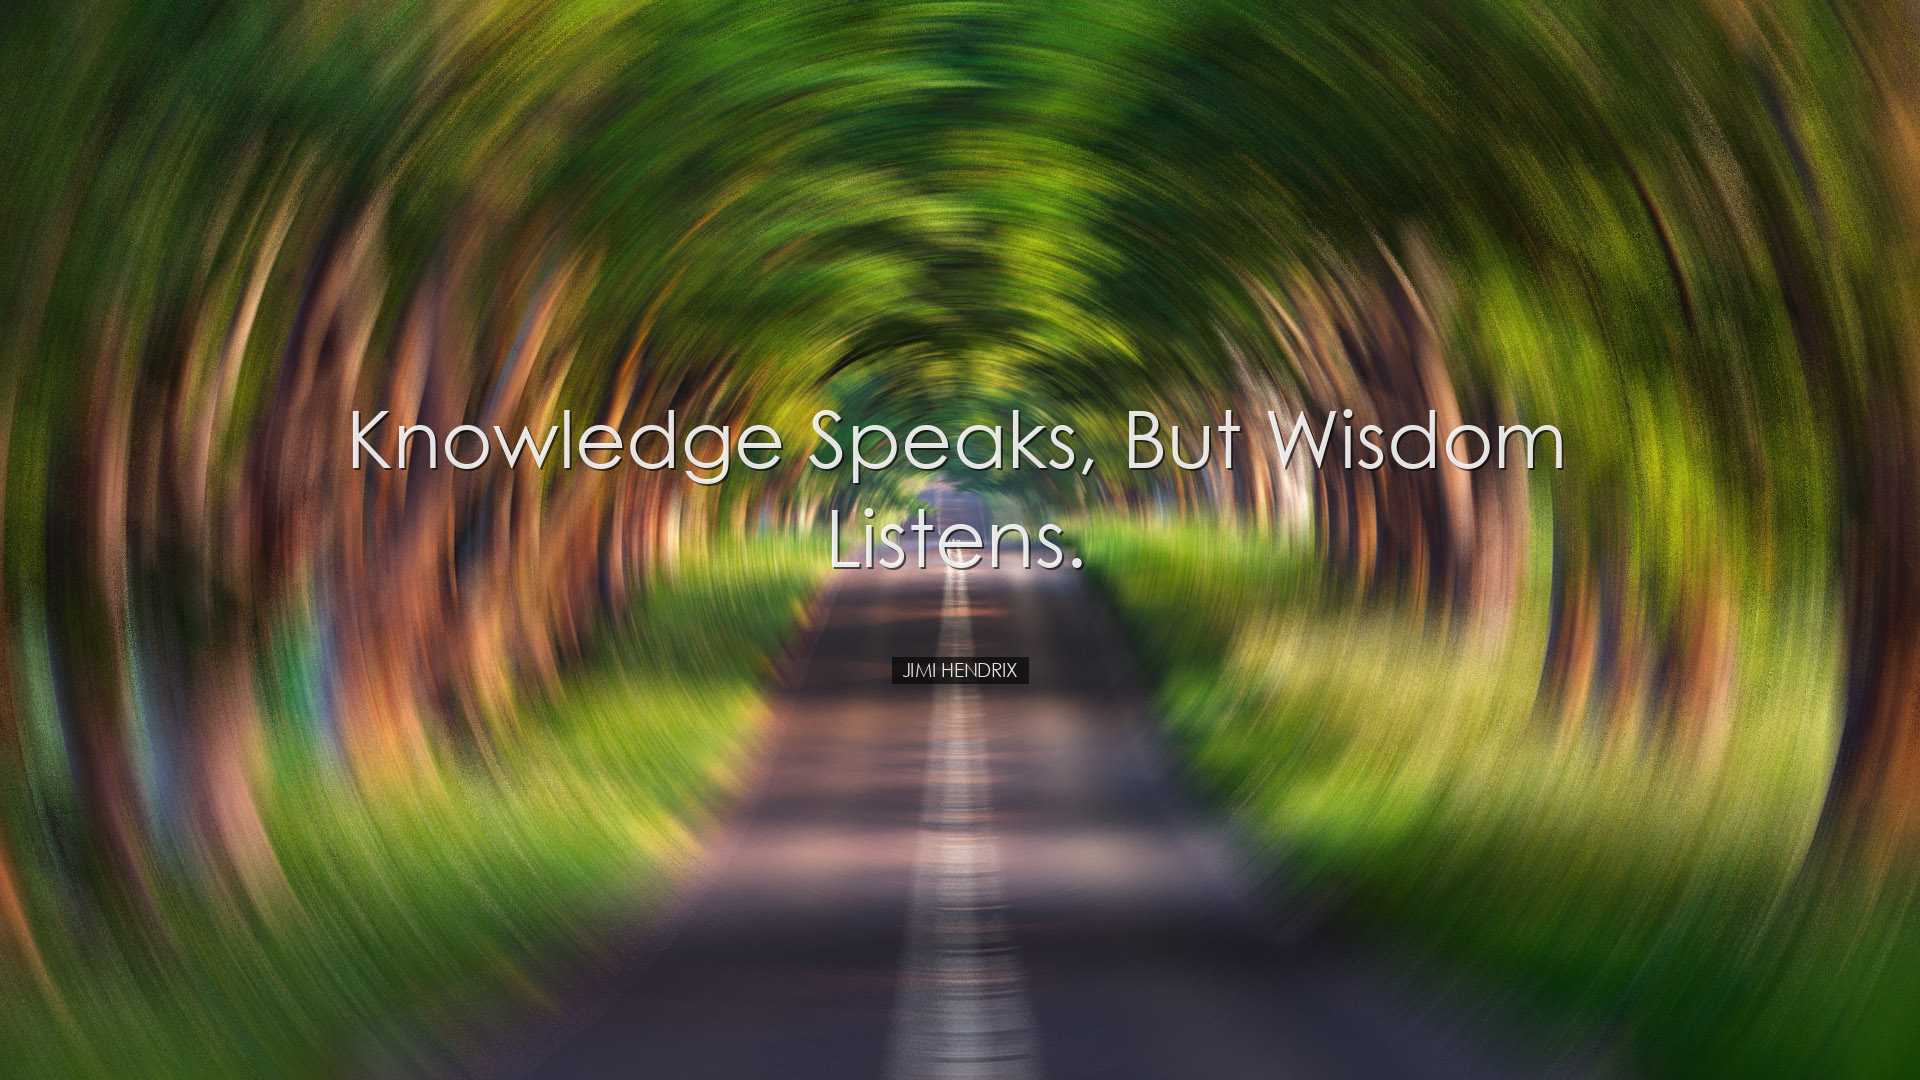 Knowledge speaks, but wisdom listens. - Jimi Hendrix